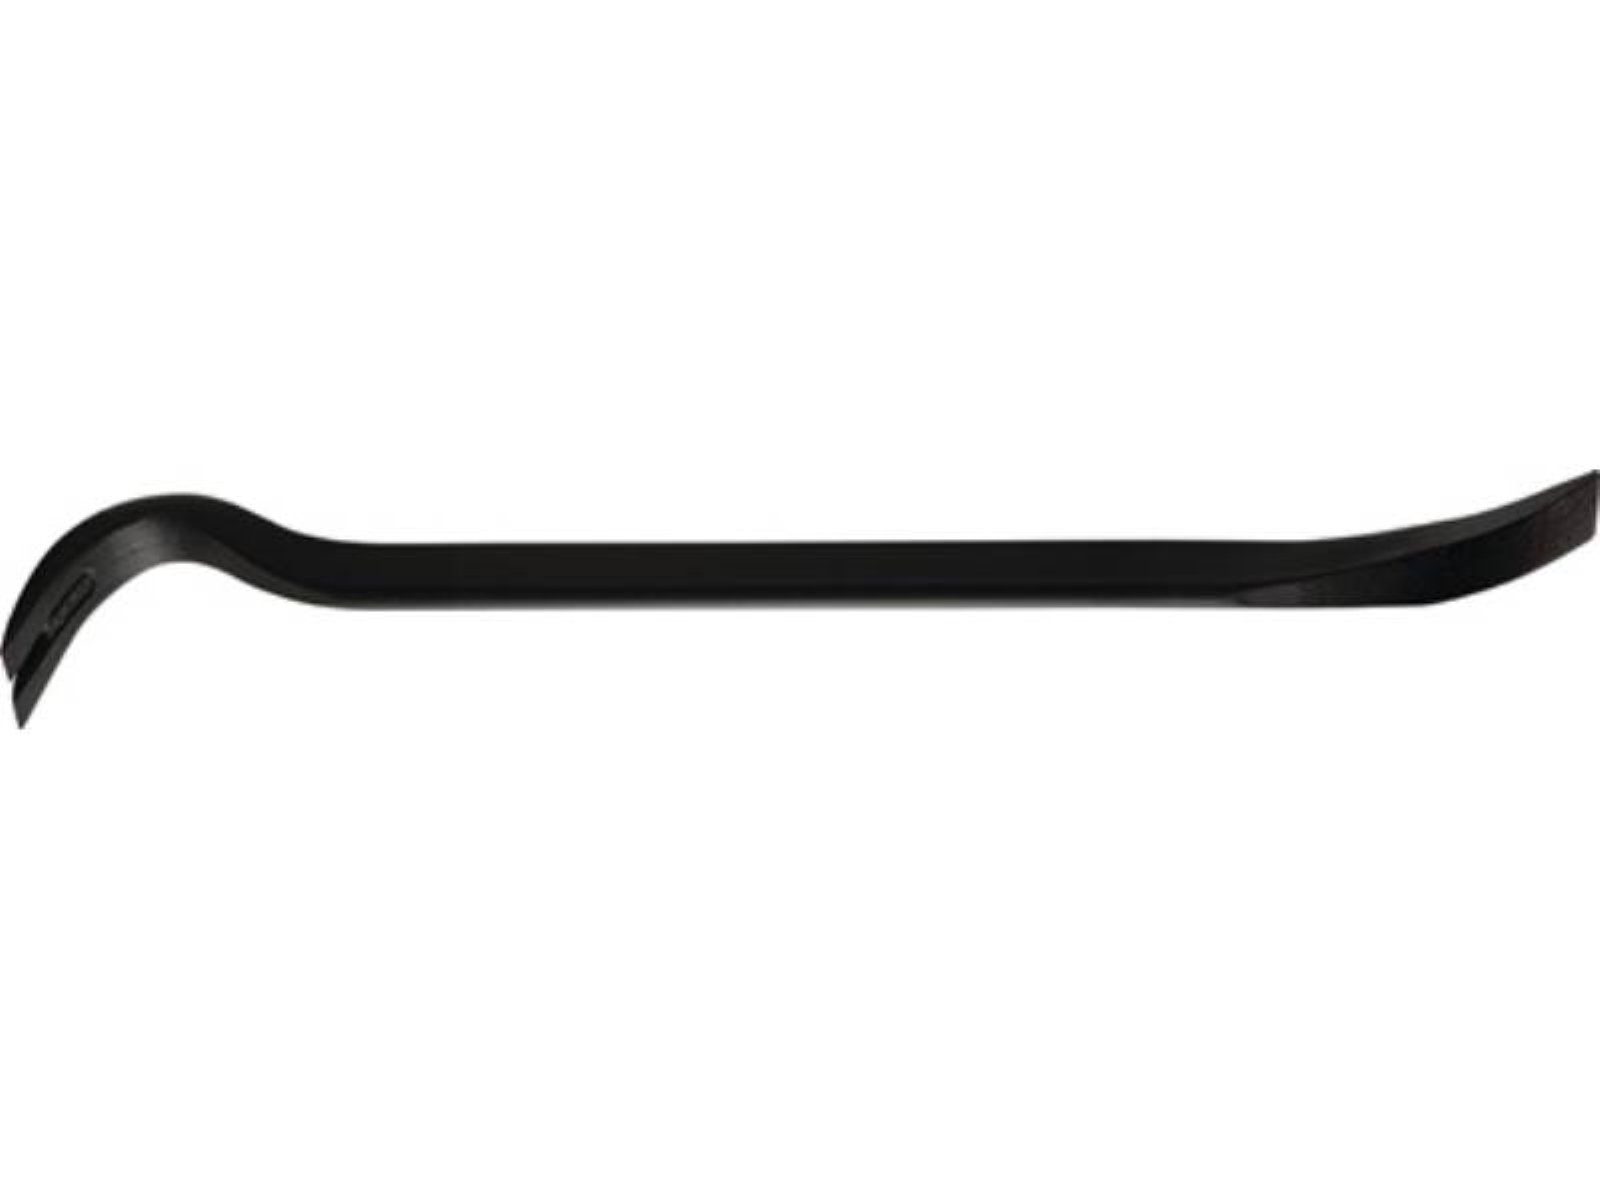 mm, ovale Bar Power Form Gesamtlänge mit 350 Peddinghaus ovaler Nageleisen Korpus Nageleisen